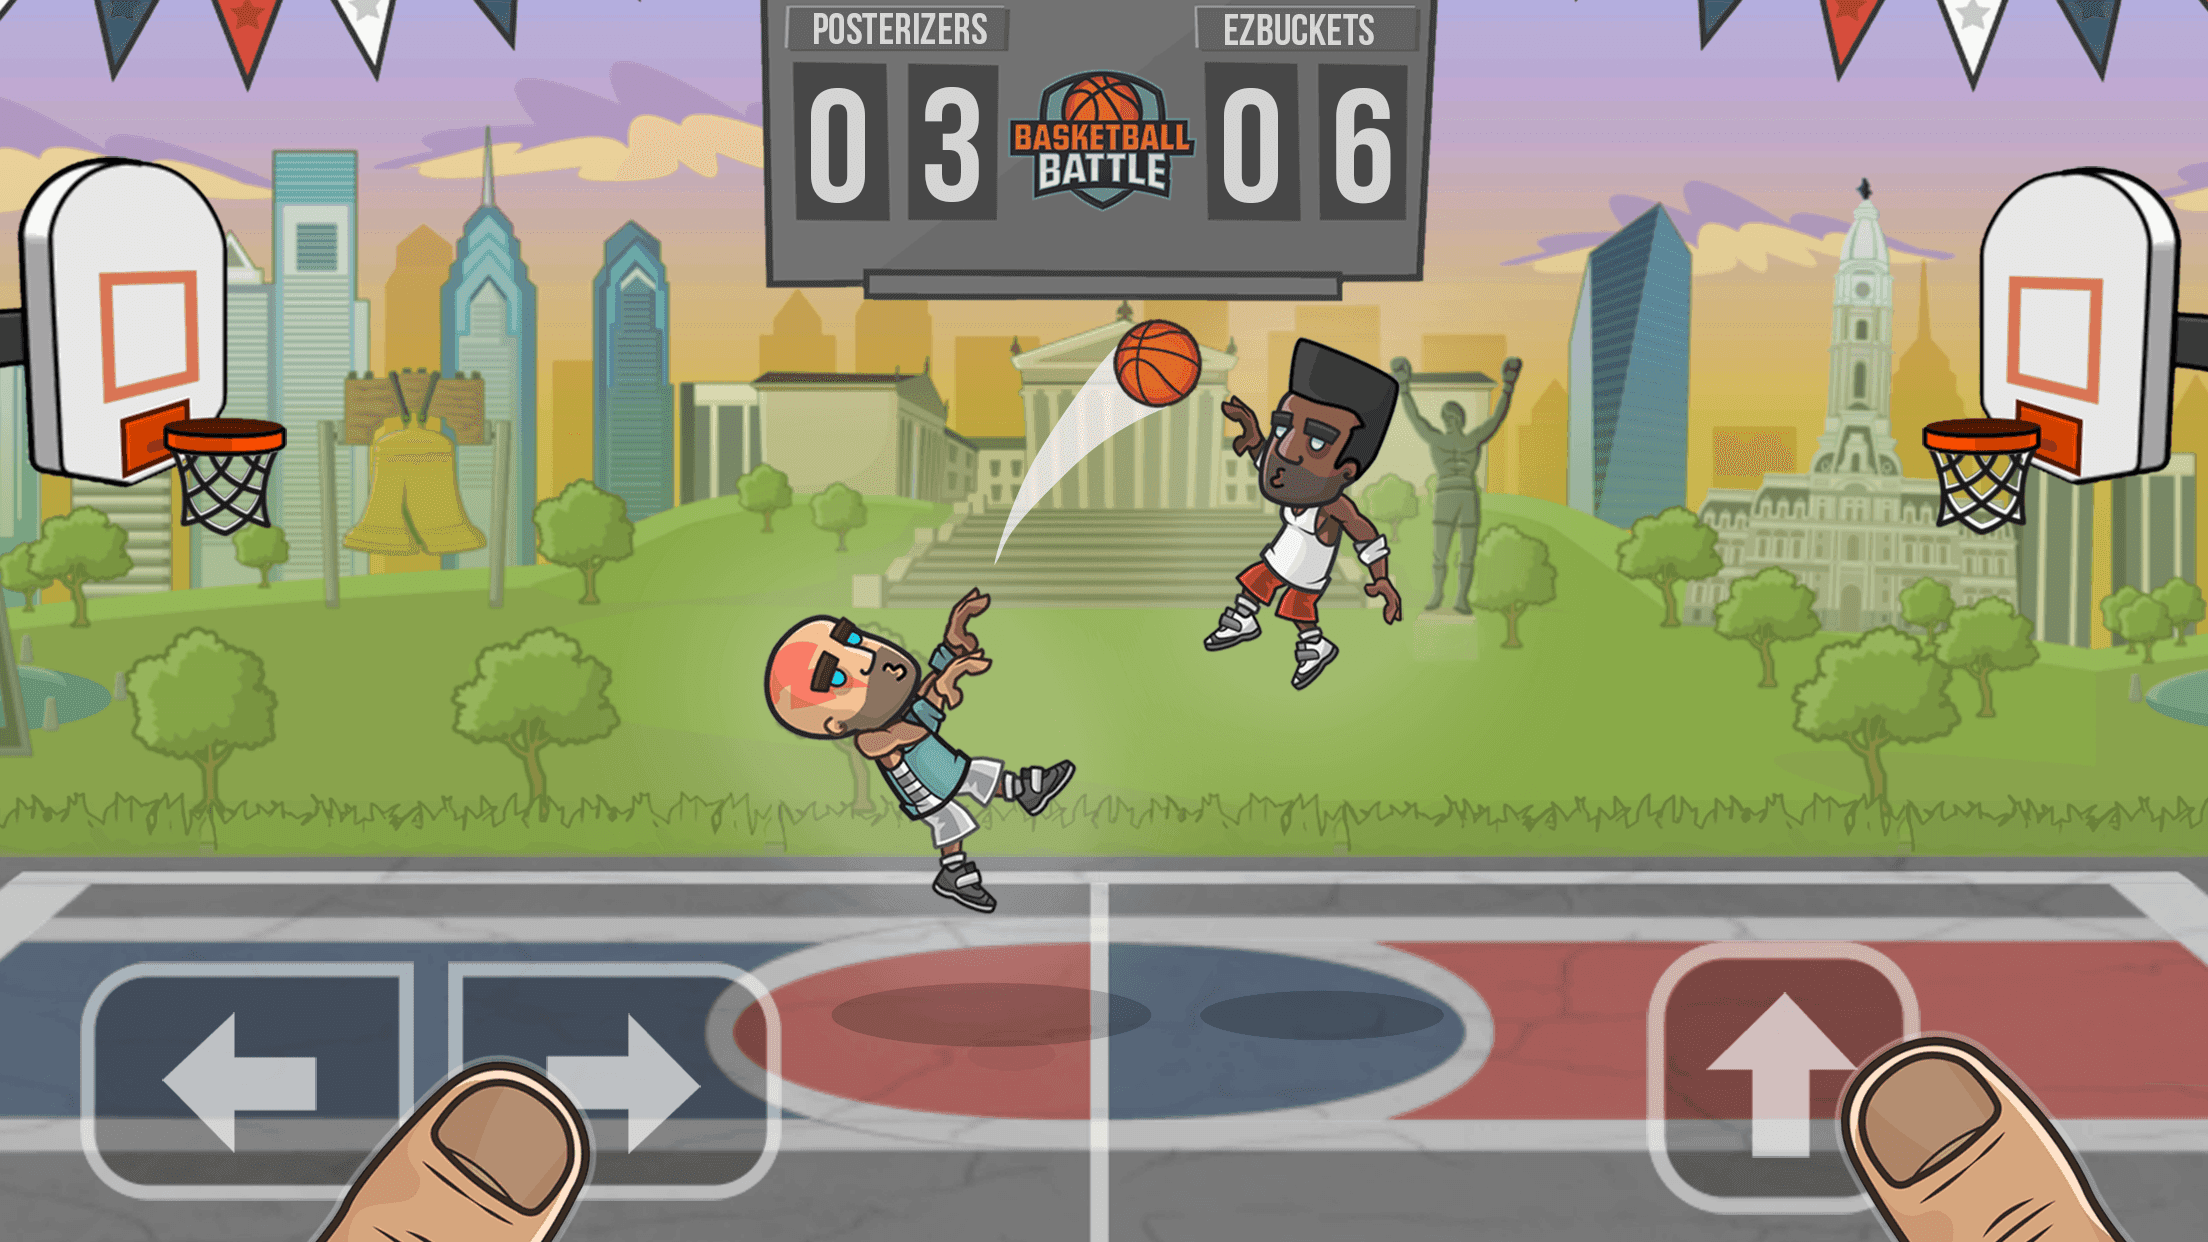 Screenshot 1 of Basket-ball: Basketball Battle 2.4.8